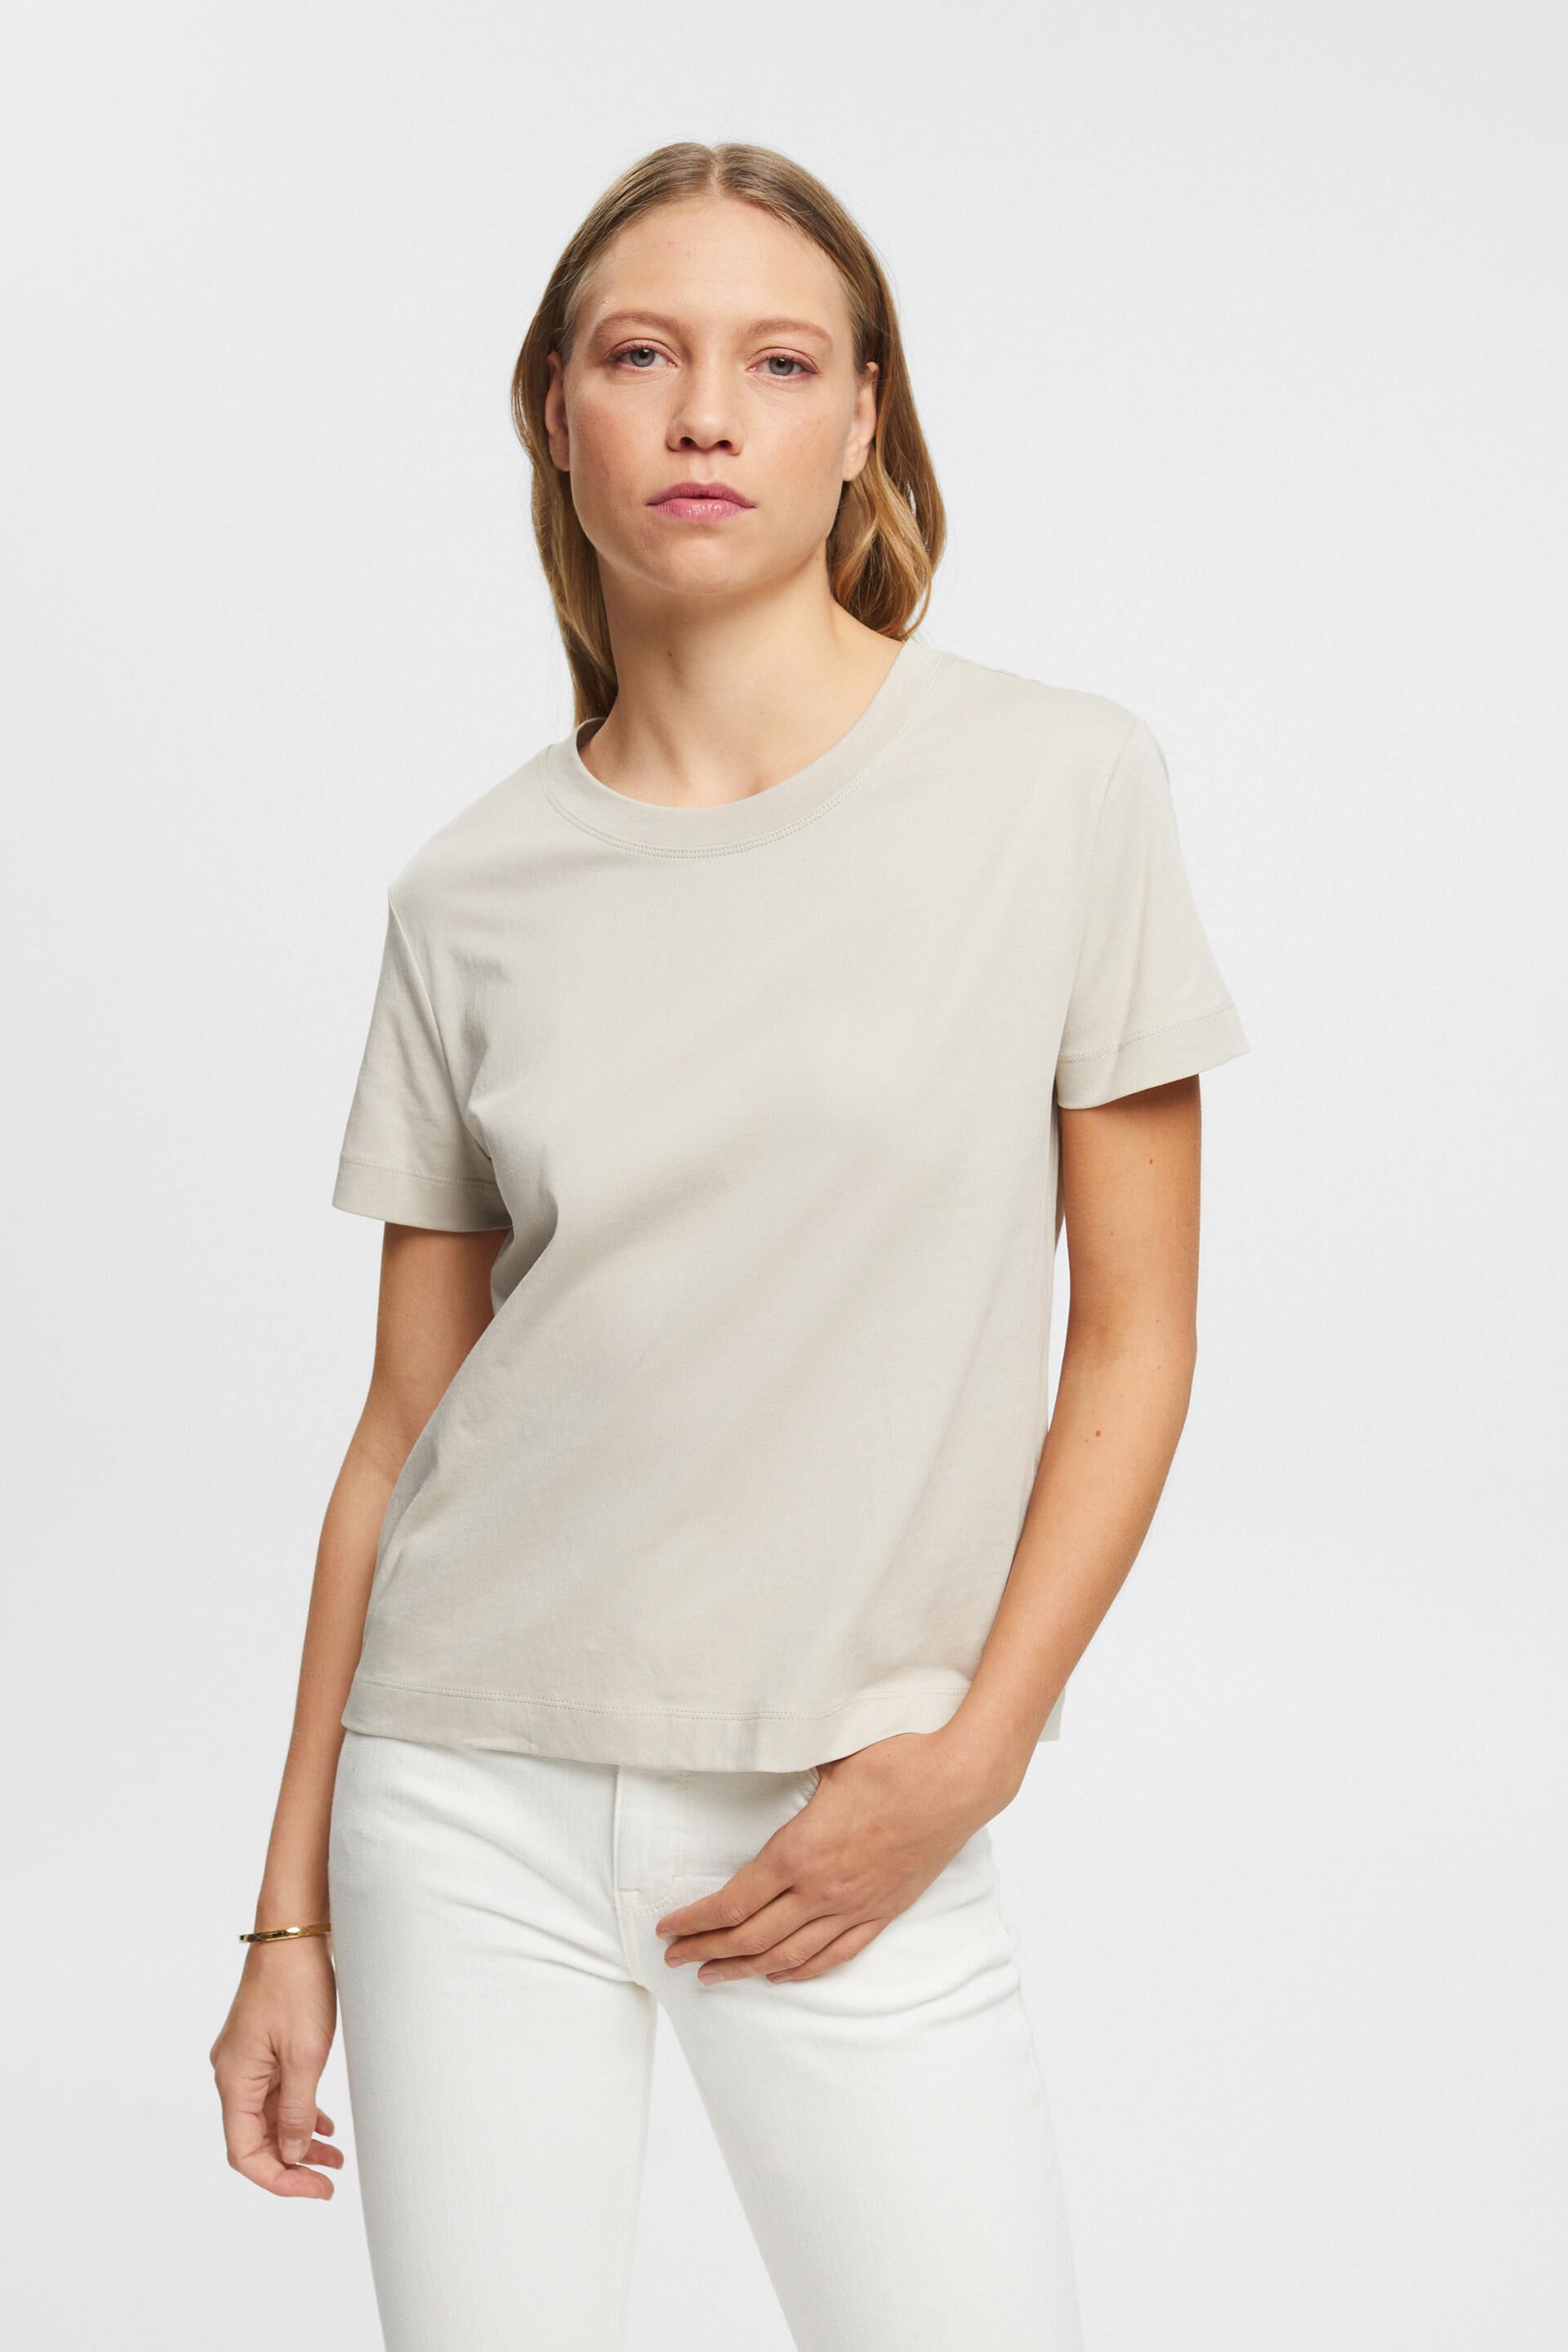 Esprit Damen Cotton crewneck t-shirt